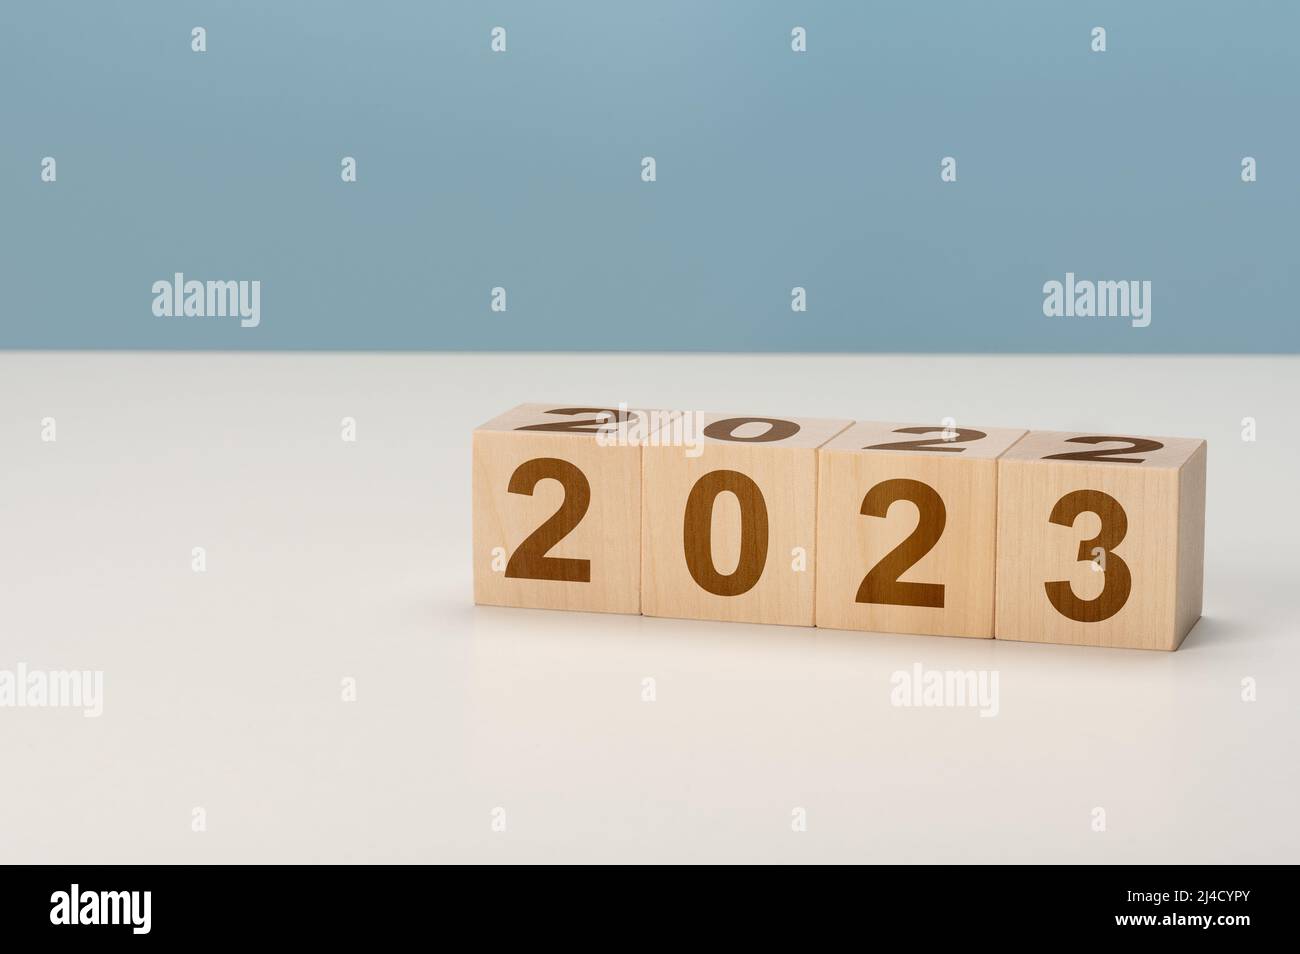 Countdown Für Das Neue Jahr. 2023 Ziel, Plan, Aktion Buchstaben auf Holzwürfeln. Konzept der Auflösung für das neue Jahr 2023 und der Zukunftsplanung. Stockfoto